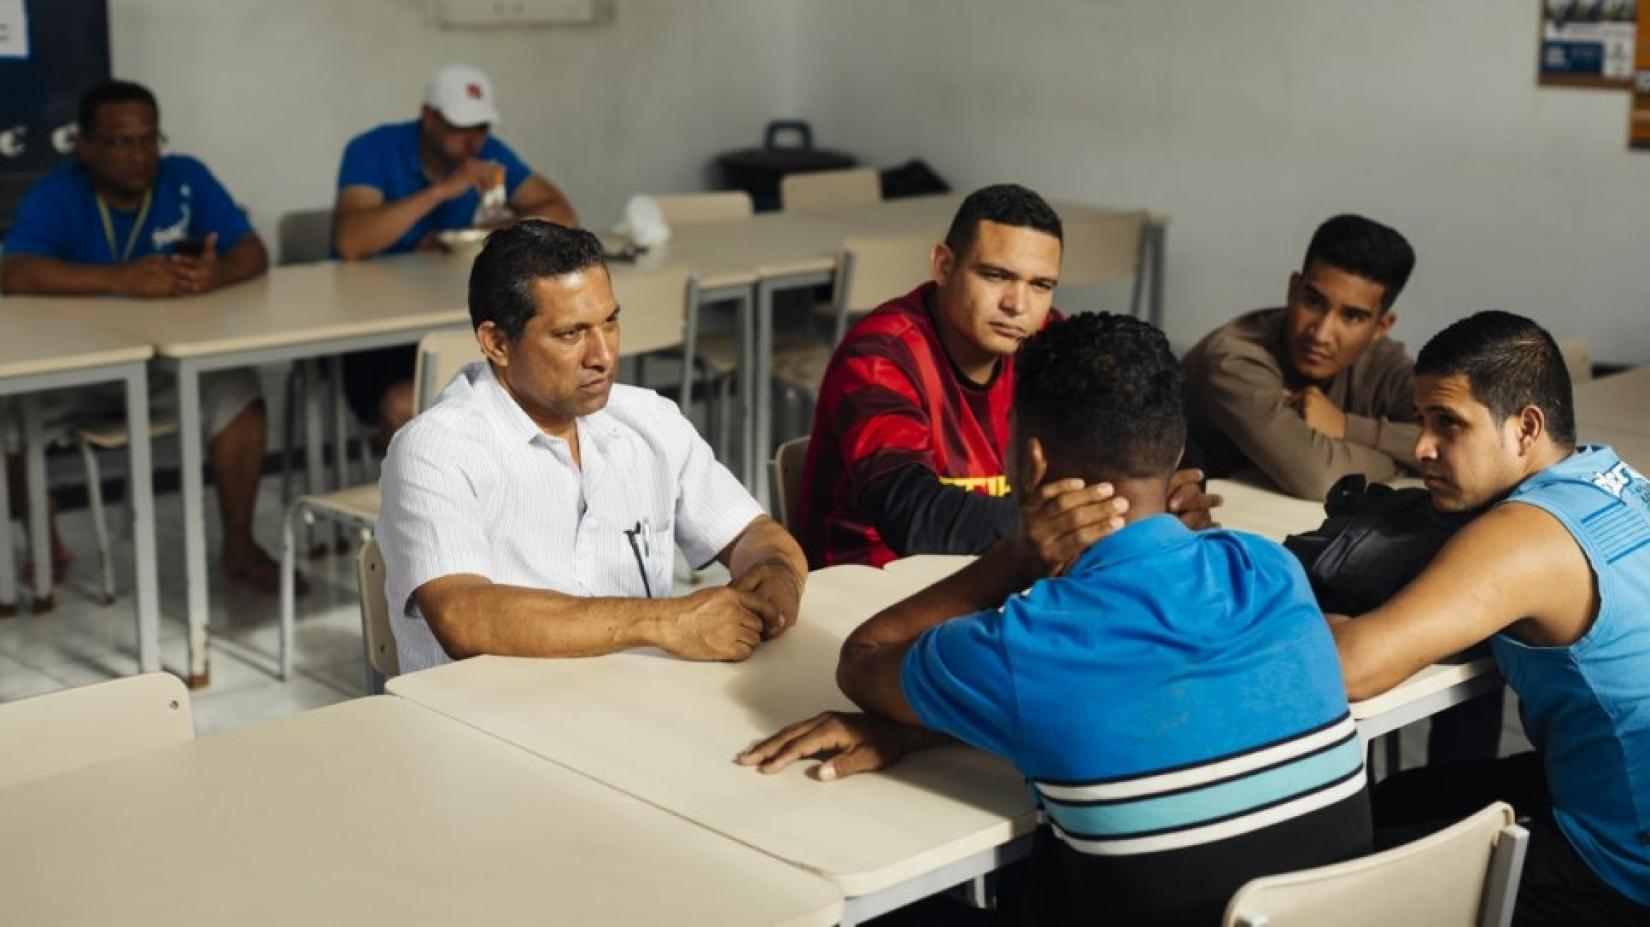 Na extrema esquerda, o refugiado venezuelano Gonzalez conversa com os atuais moradores do Centro Transitório de Acolhimento (CTA), em São Paulo, onde morava. Foto: ACNUR/Gabo Morales